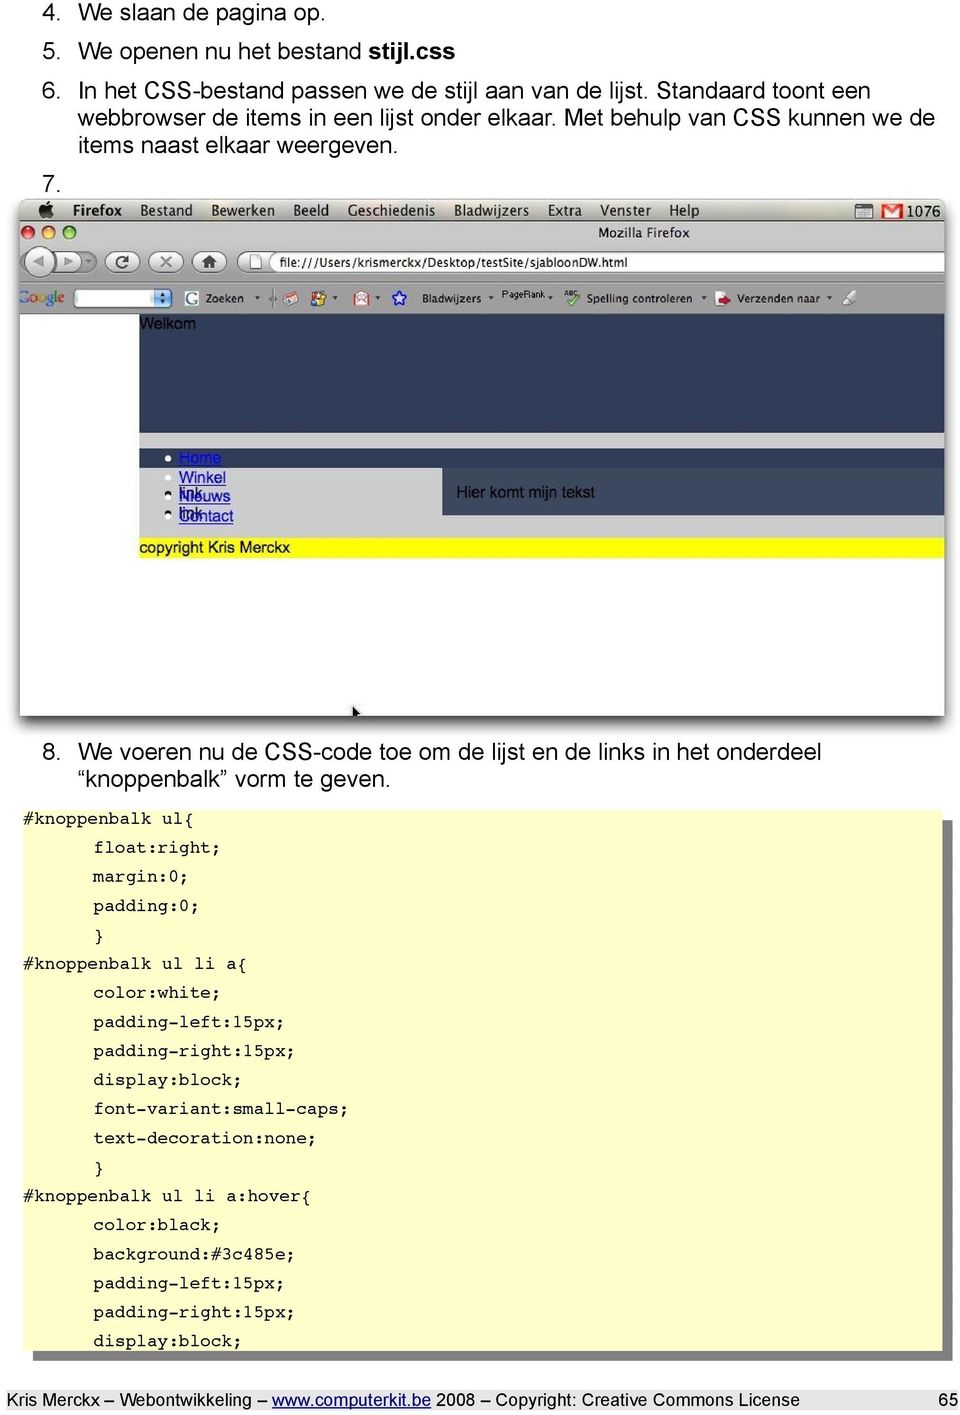 We voeren nu de CSS-code toe om de lijst en de links in het onderdeel knoppenbalk vorm te geven.